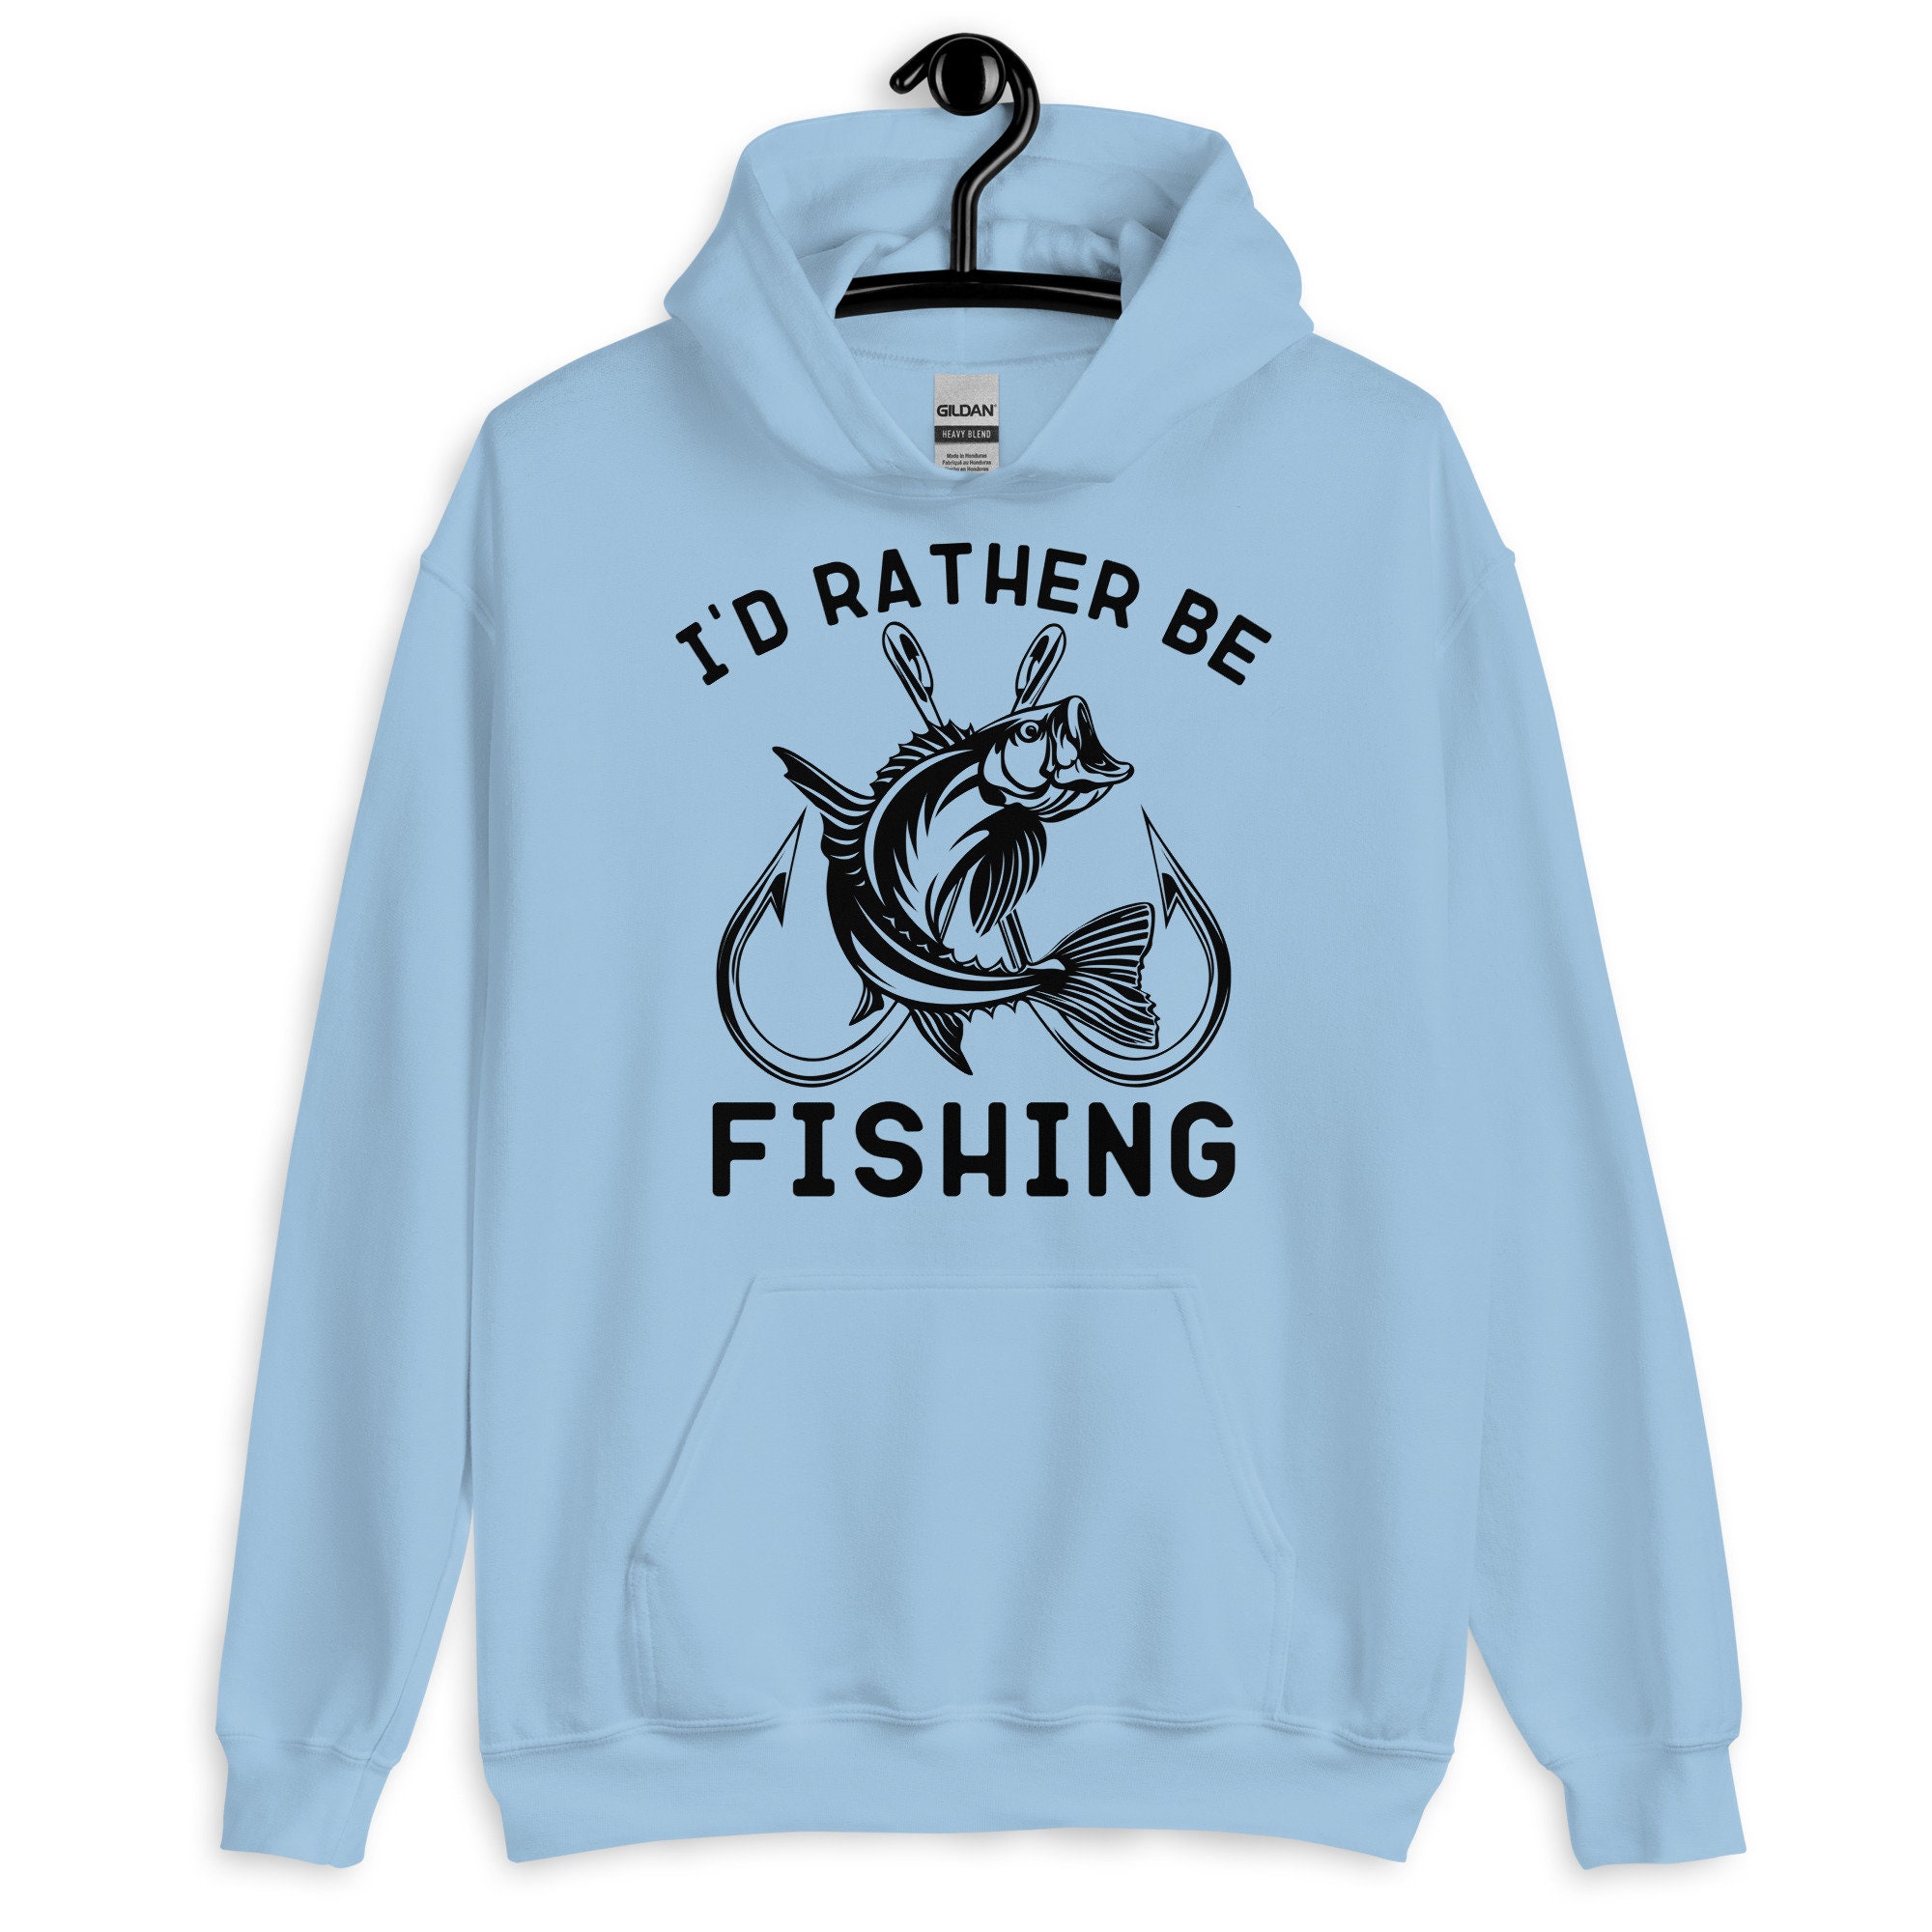 Fishing Hoodie, I'd Rather Be Fishing Hoodie, Fisherman Hoodie